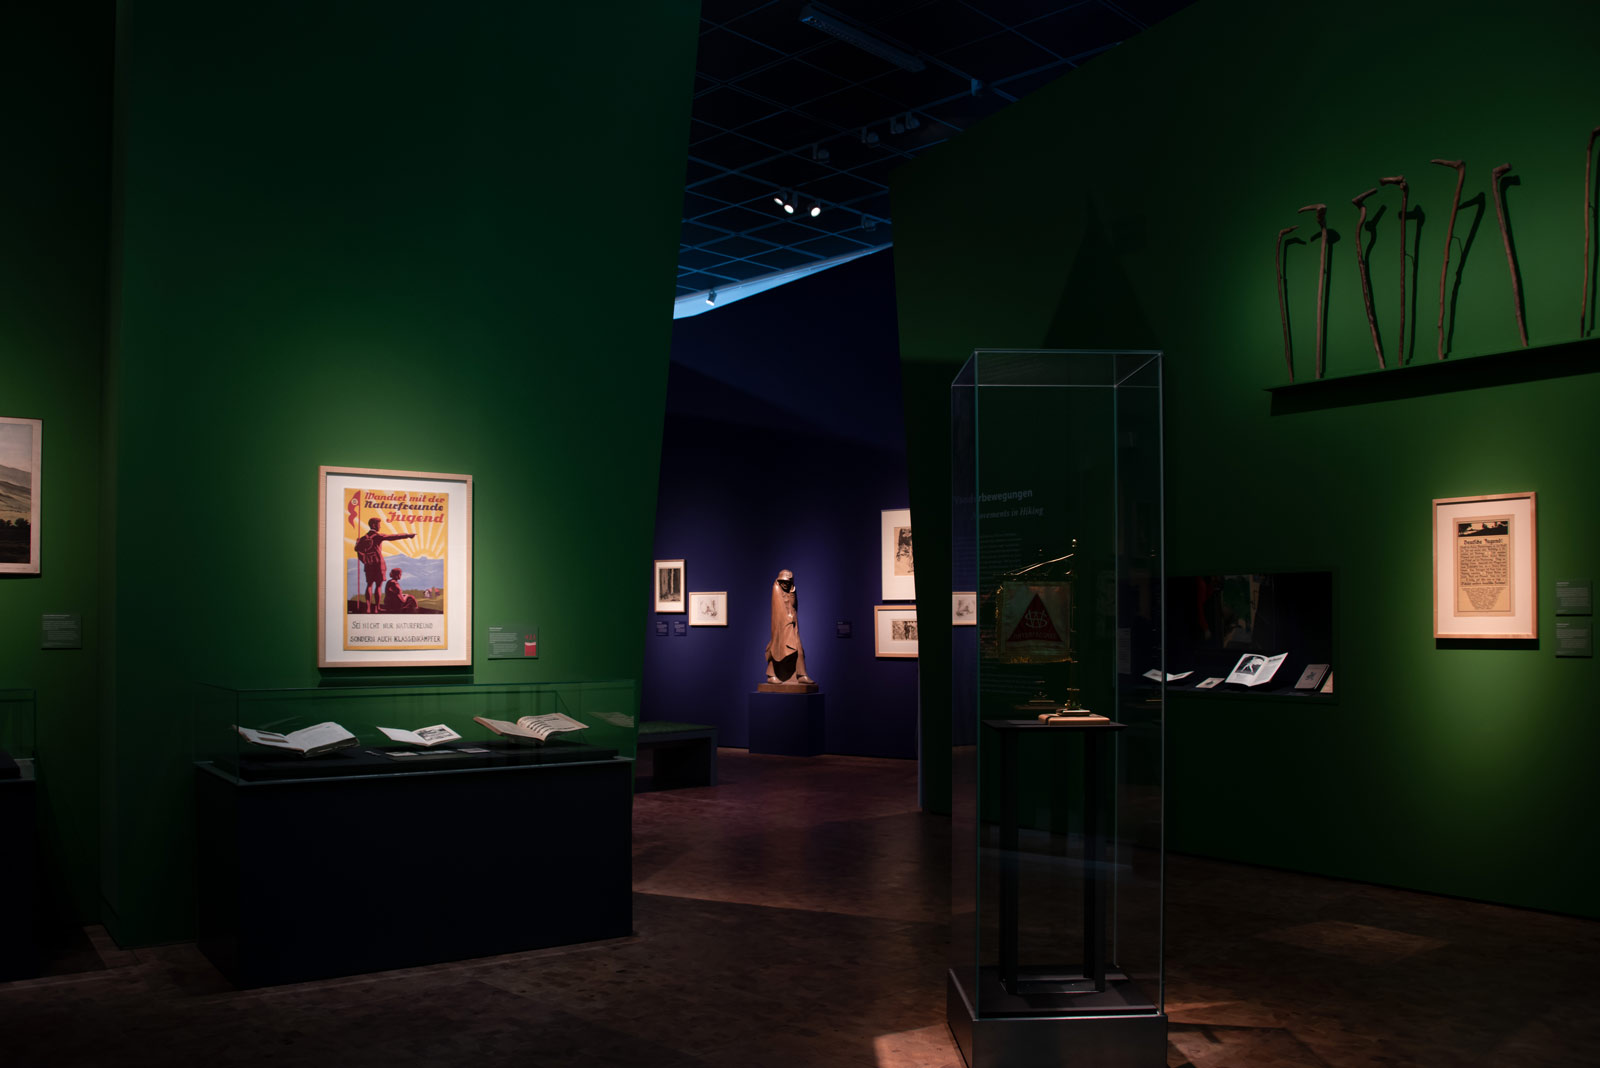 Das Referenzbild für Ausstellungsgestaltung aus der Sonderausstellung Wanderland zeigt eine Exponat-Präsentation mit Wandvitrine und Ganzglas-Vitrine.